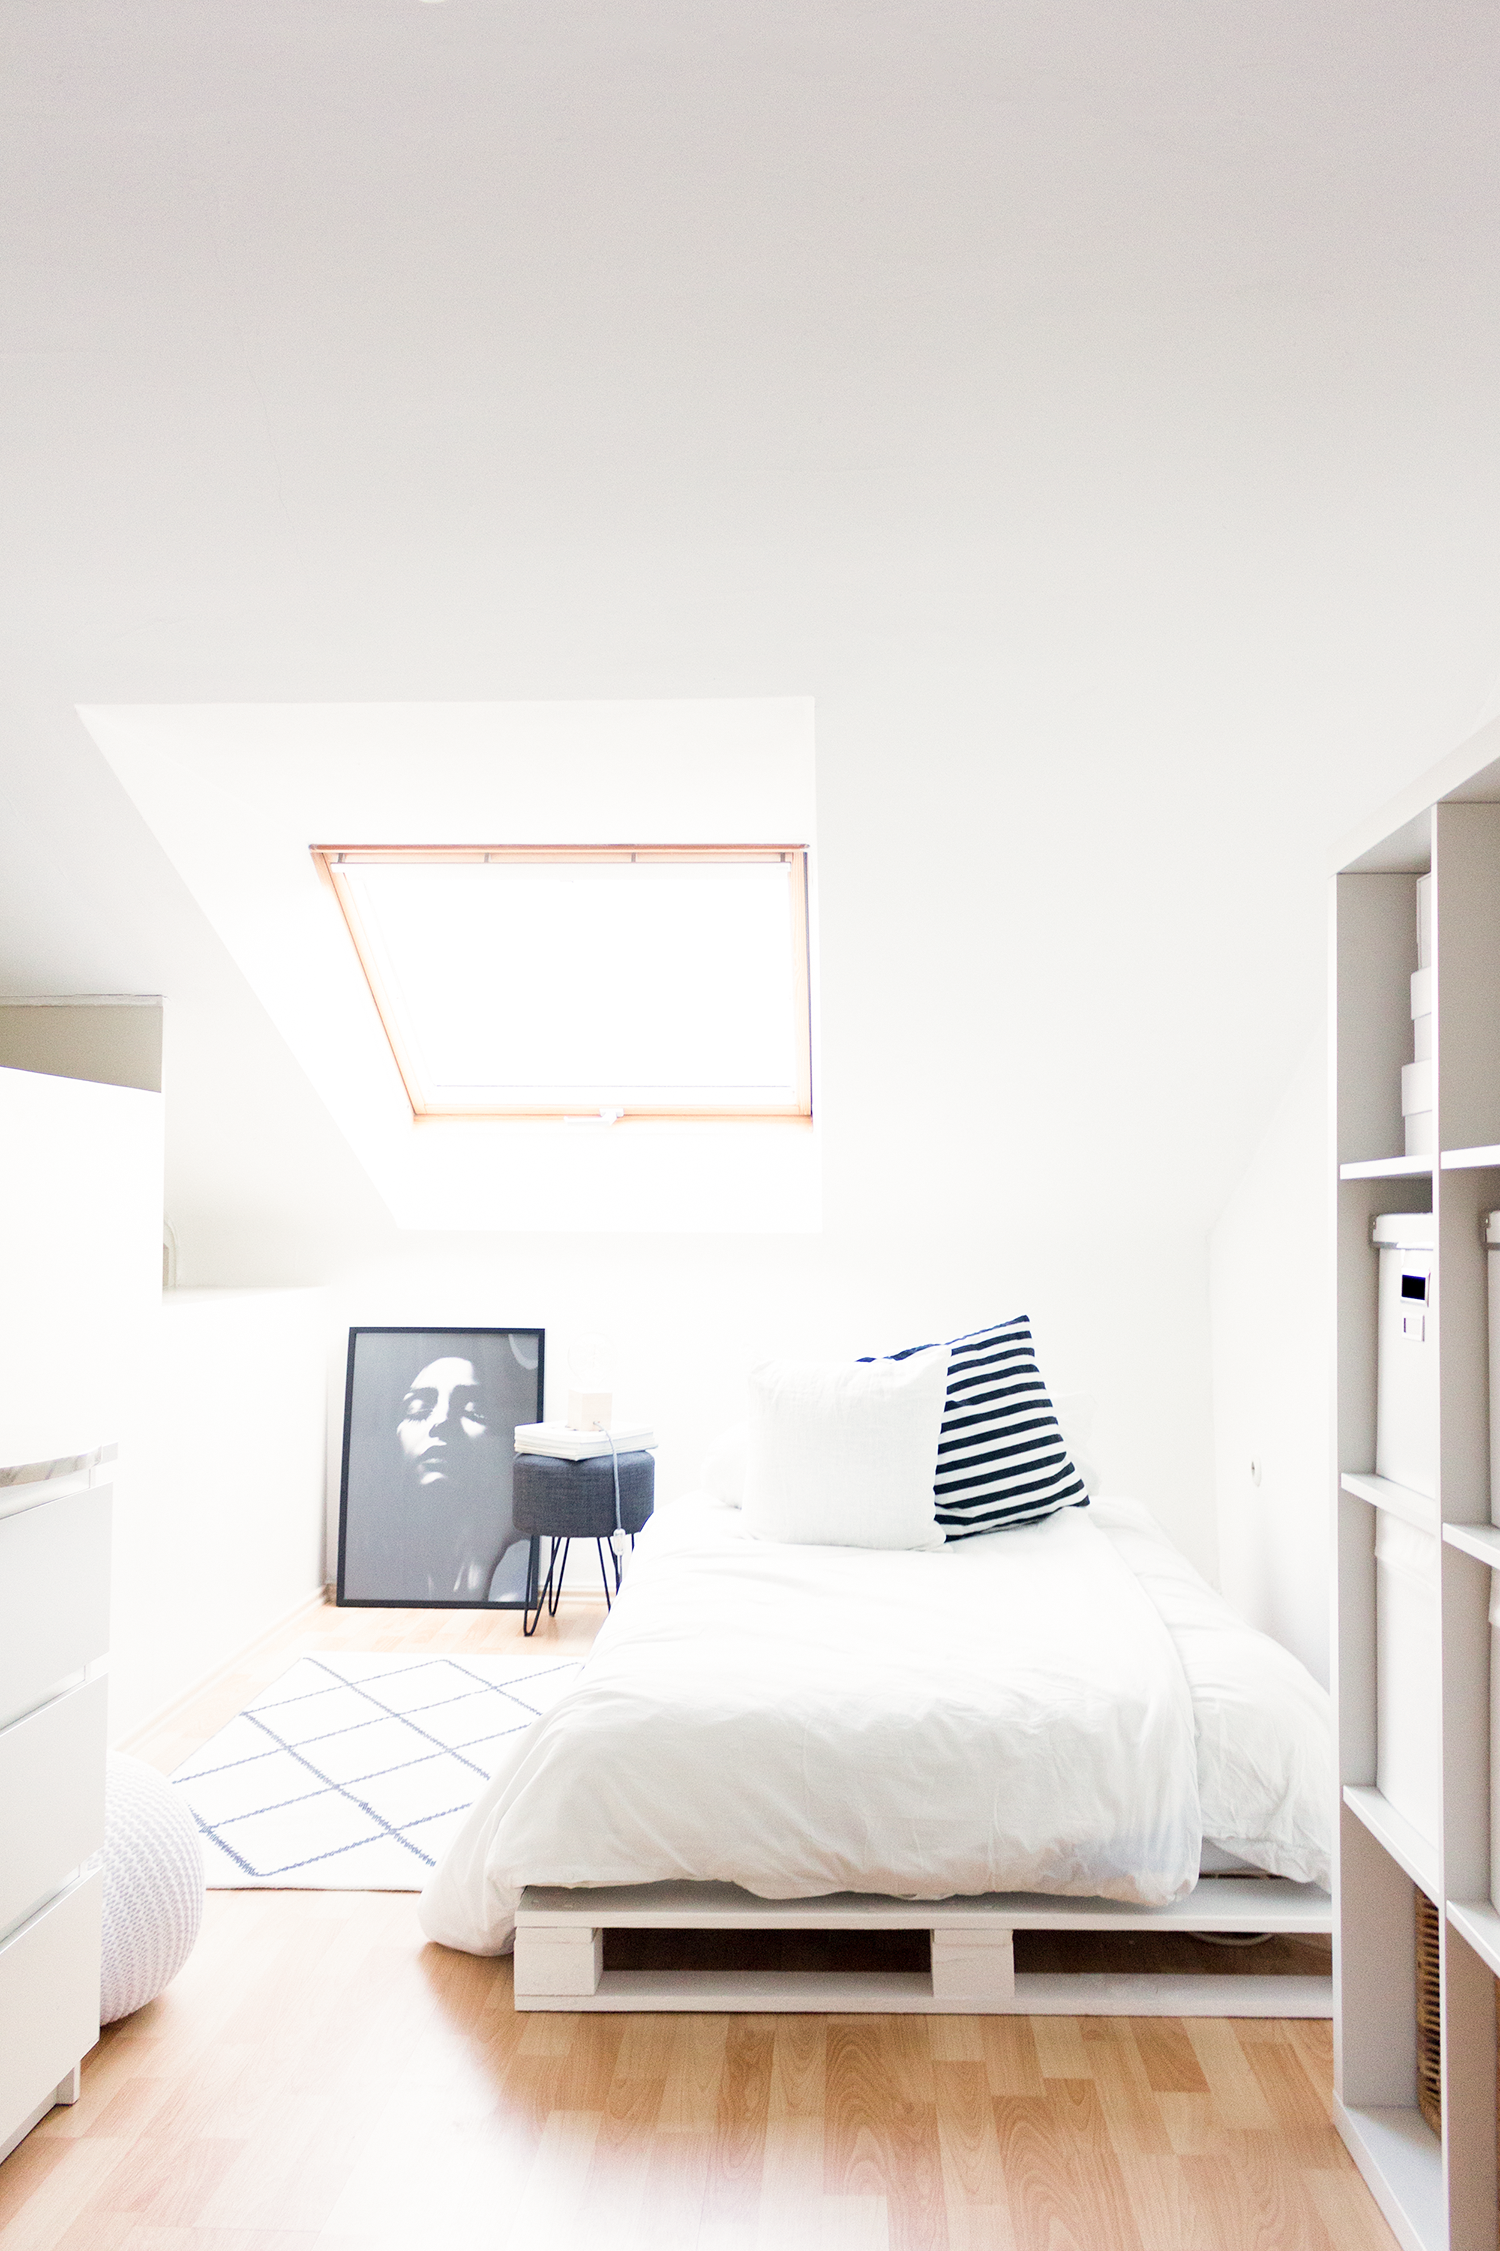 Anleitung für ein Bett aus weißen Europaletten. Eine einfache, schnelle und günstiges Do it yourself-Idee mit tollem Ergebnis!